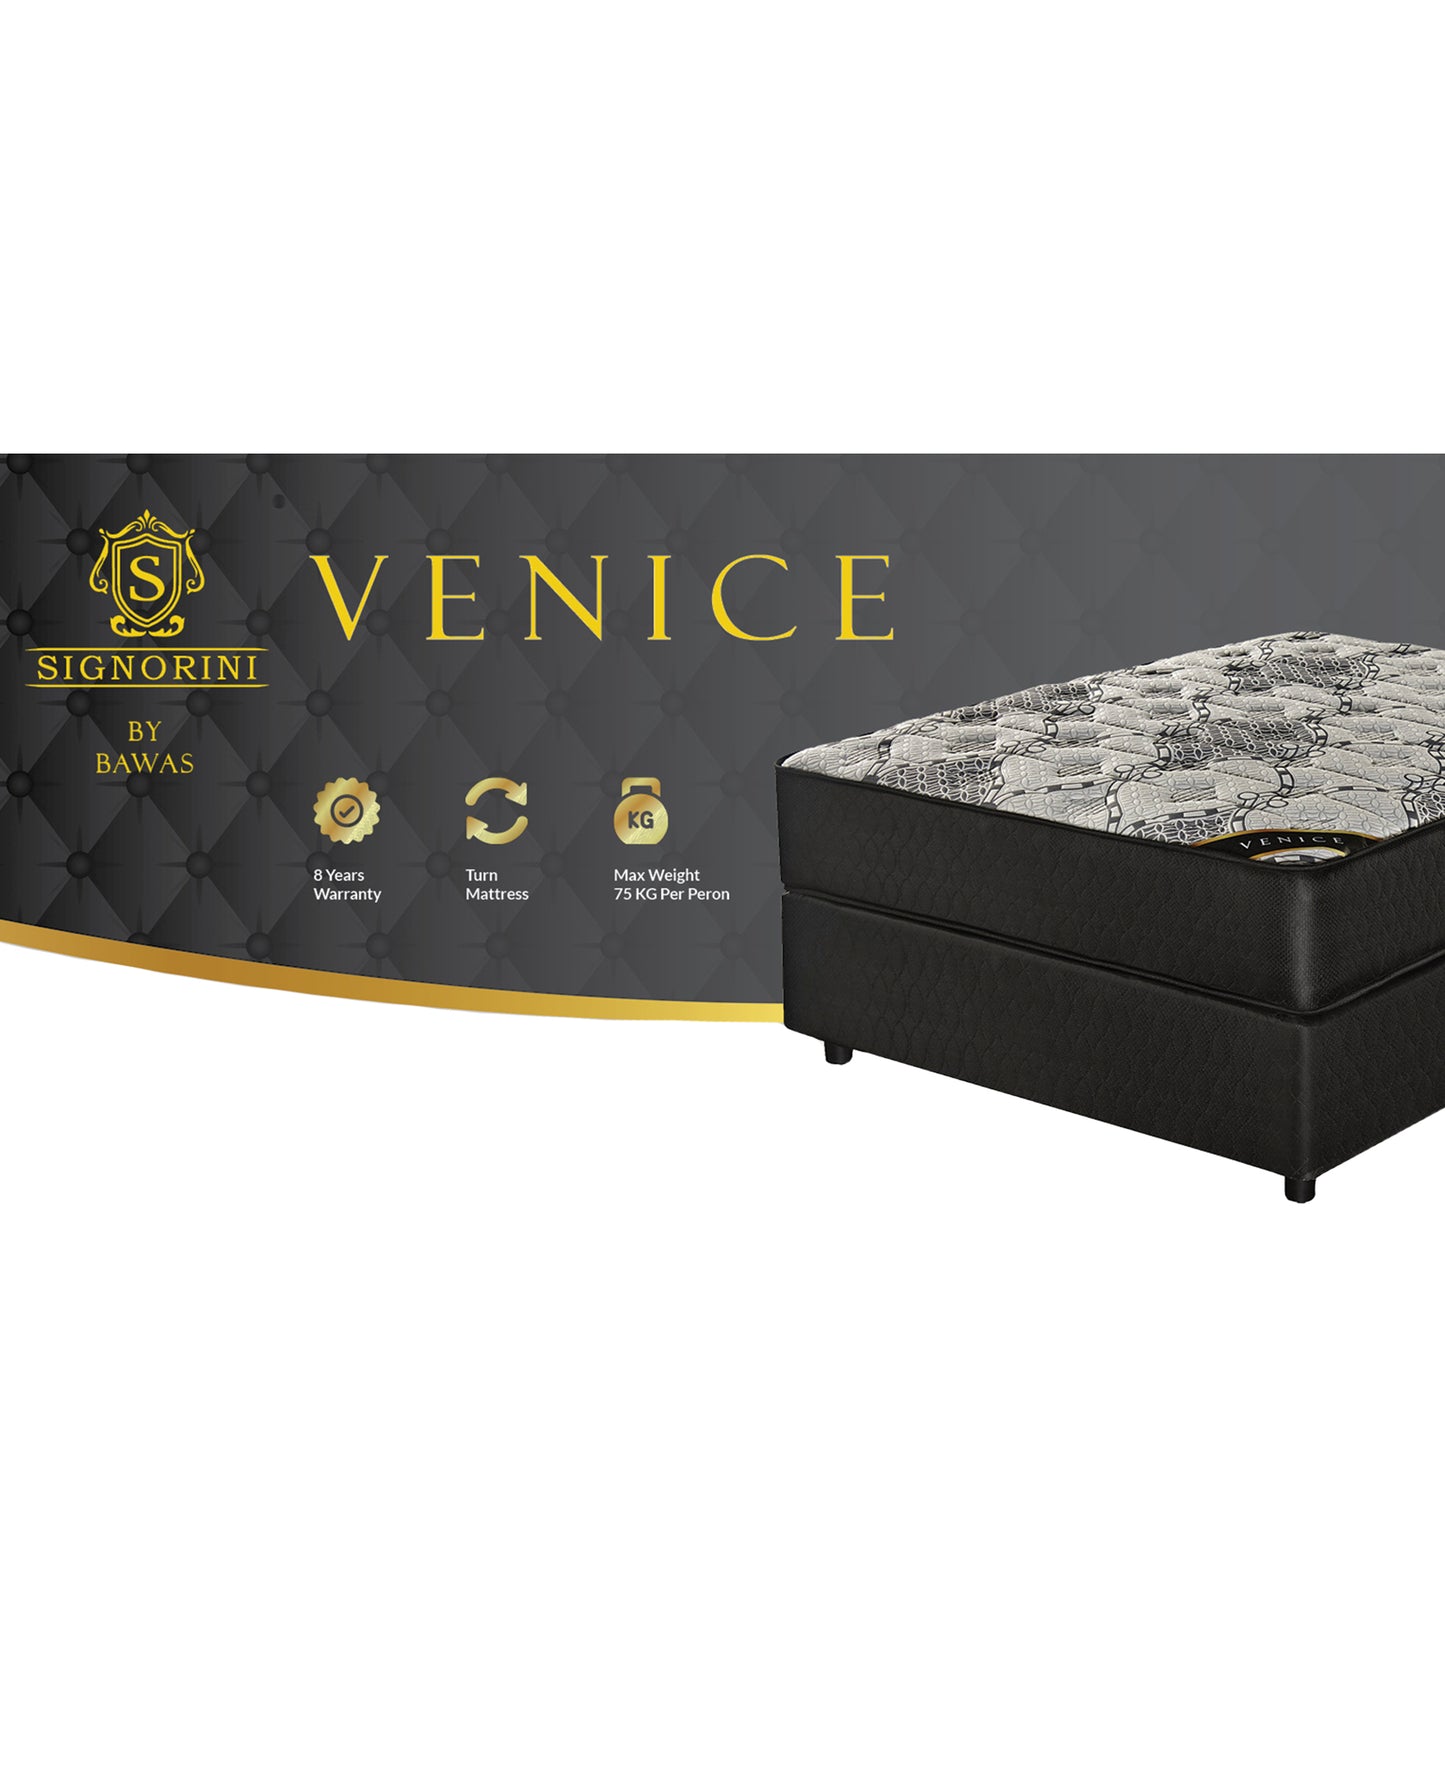 Signorini Venice Bed